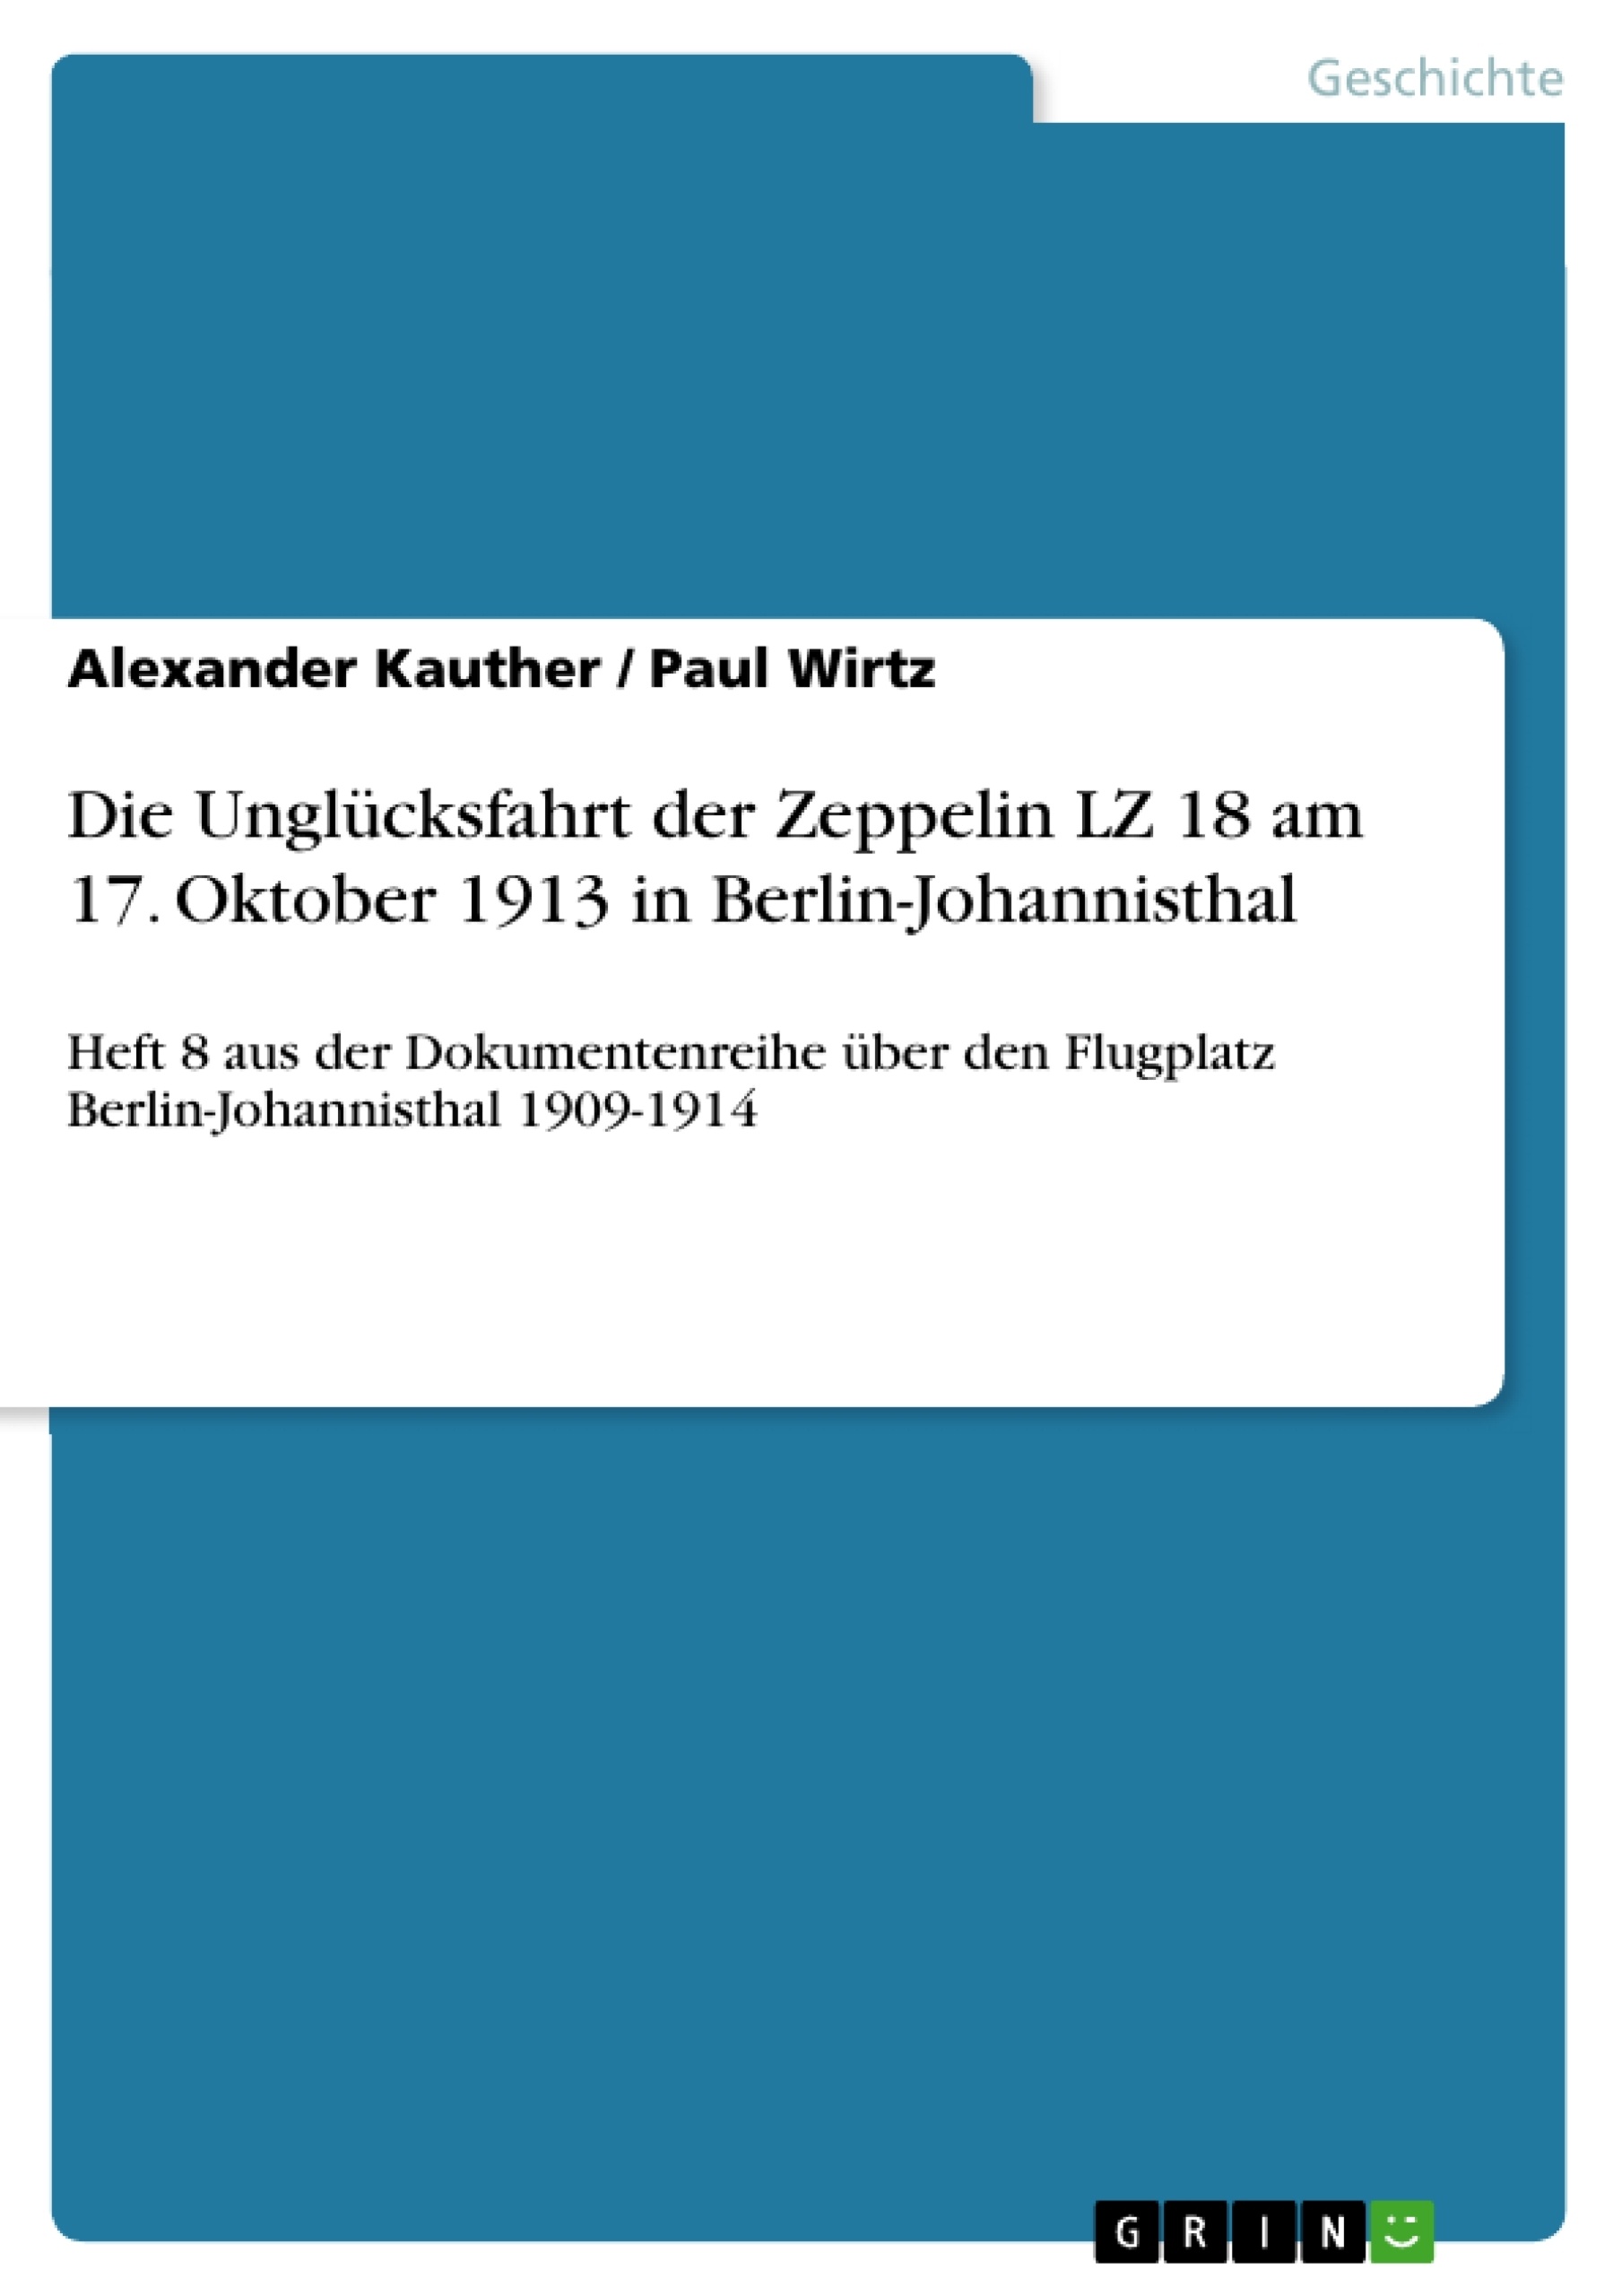 Titel: Die Unglücksfahrt der Zeppelin LZ 18 am 17. Oktober 1913 in Berlin-Johannisthal